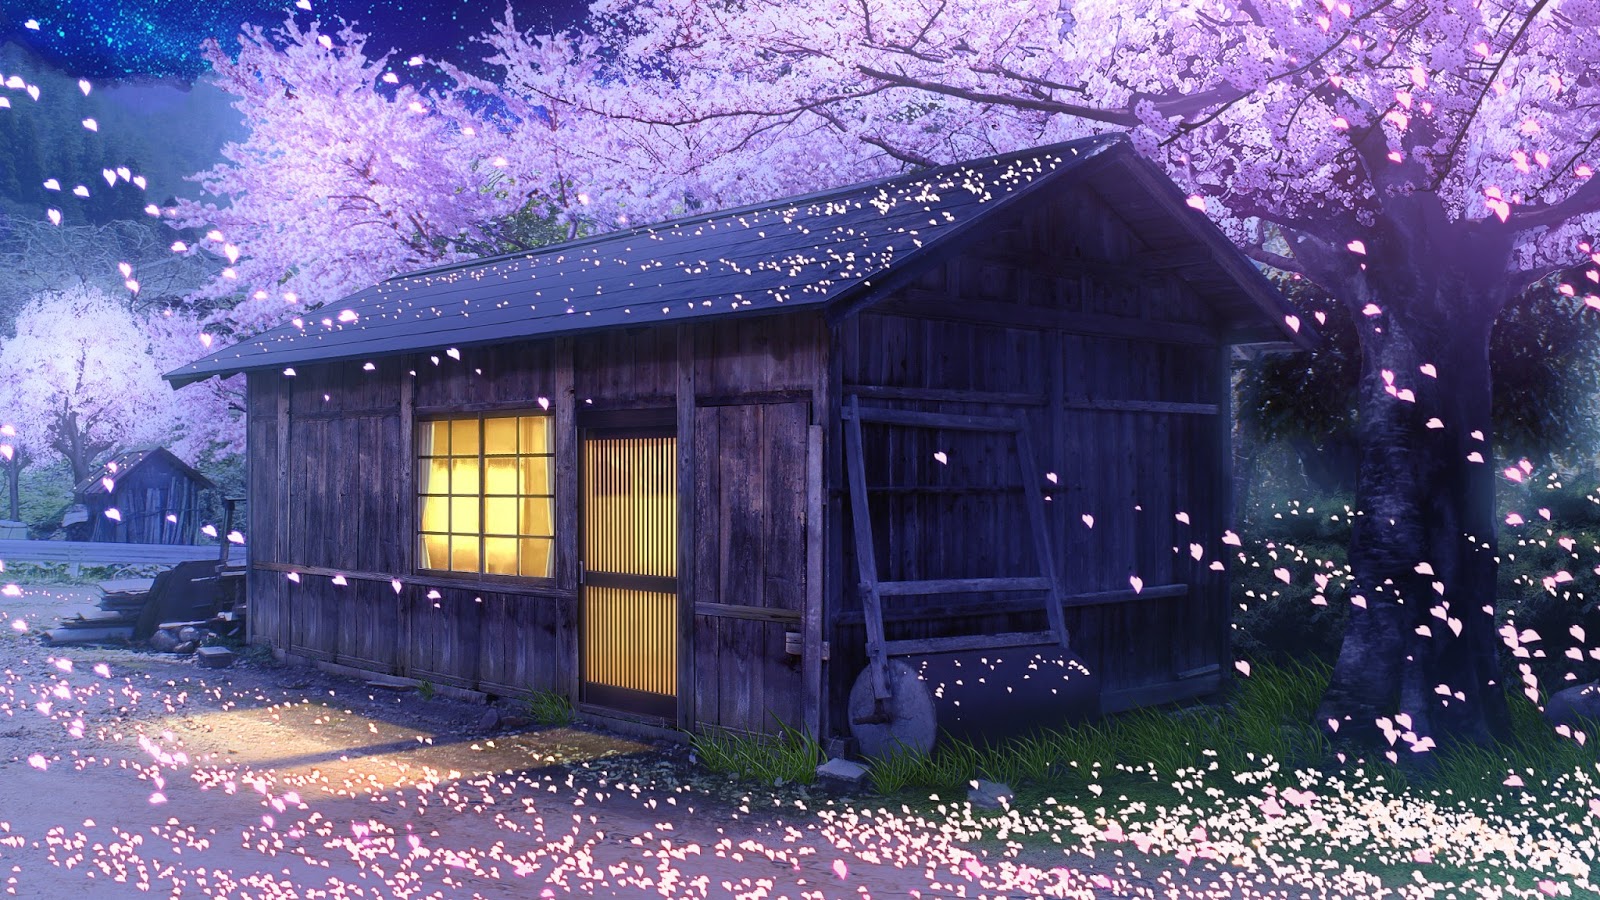 Anime Landscape: Farm Full of Cherry Blossom (Anime Background)